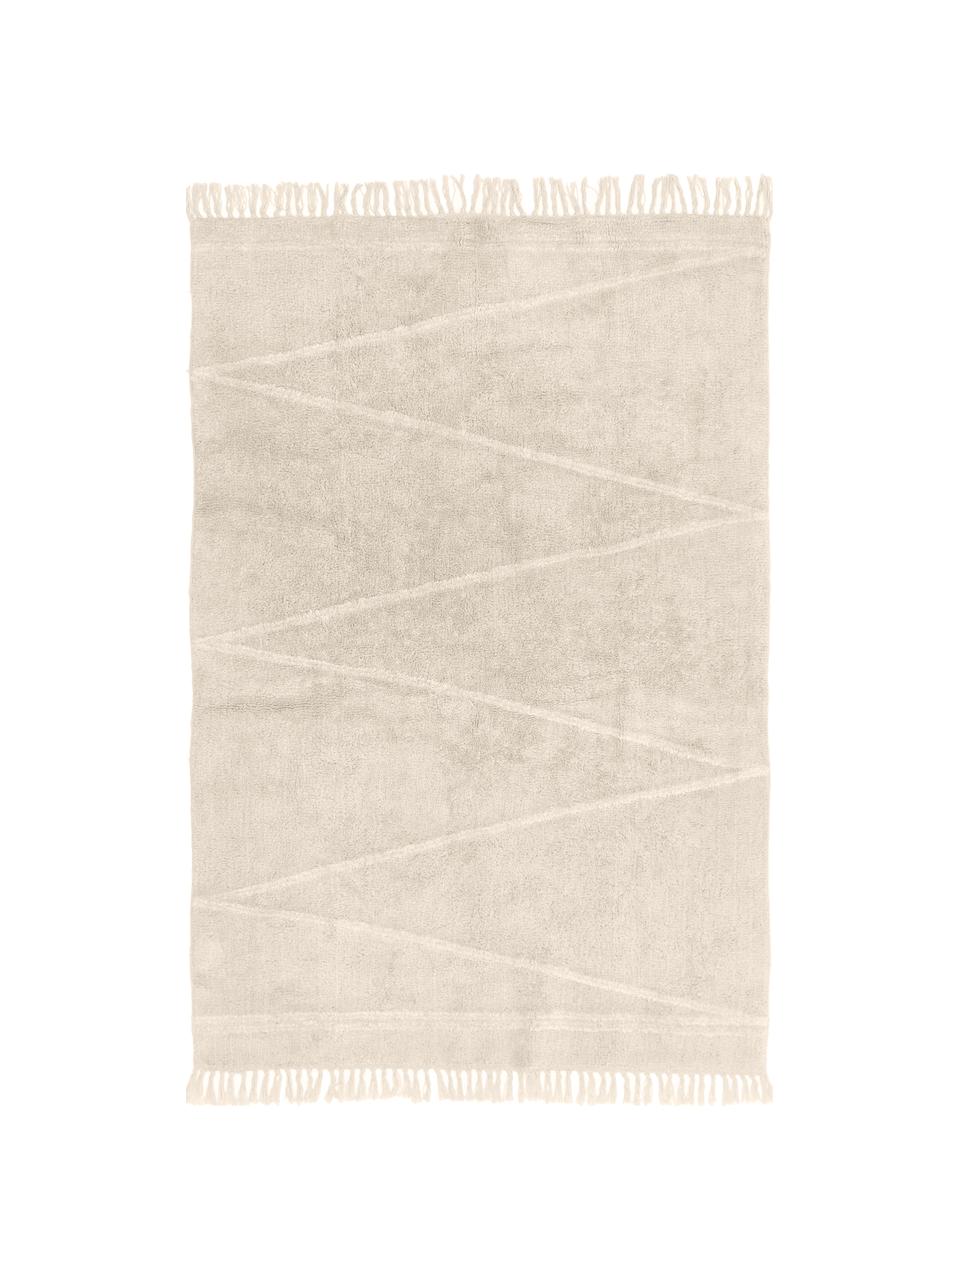 Handgetufteter Baumwollteppich Asisa mit Zickzack-Muster und Fransen, Beige & Cremeweiss, B 120 x L 180 cm (Grösse S)